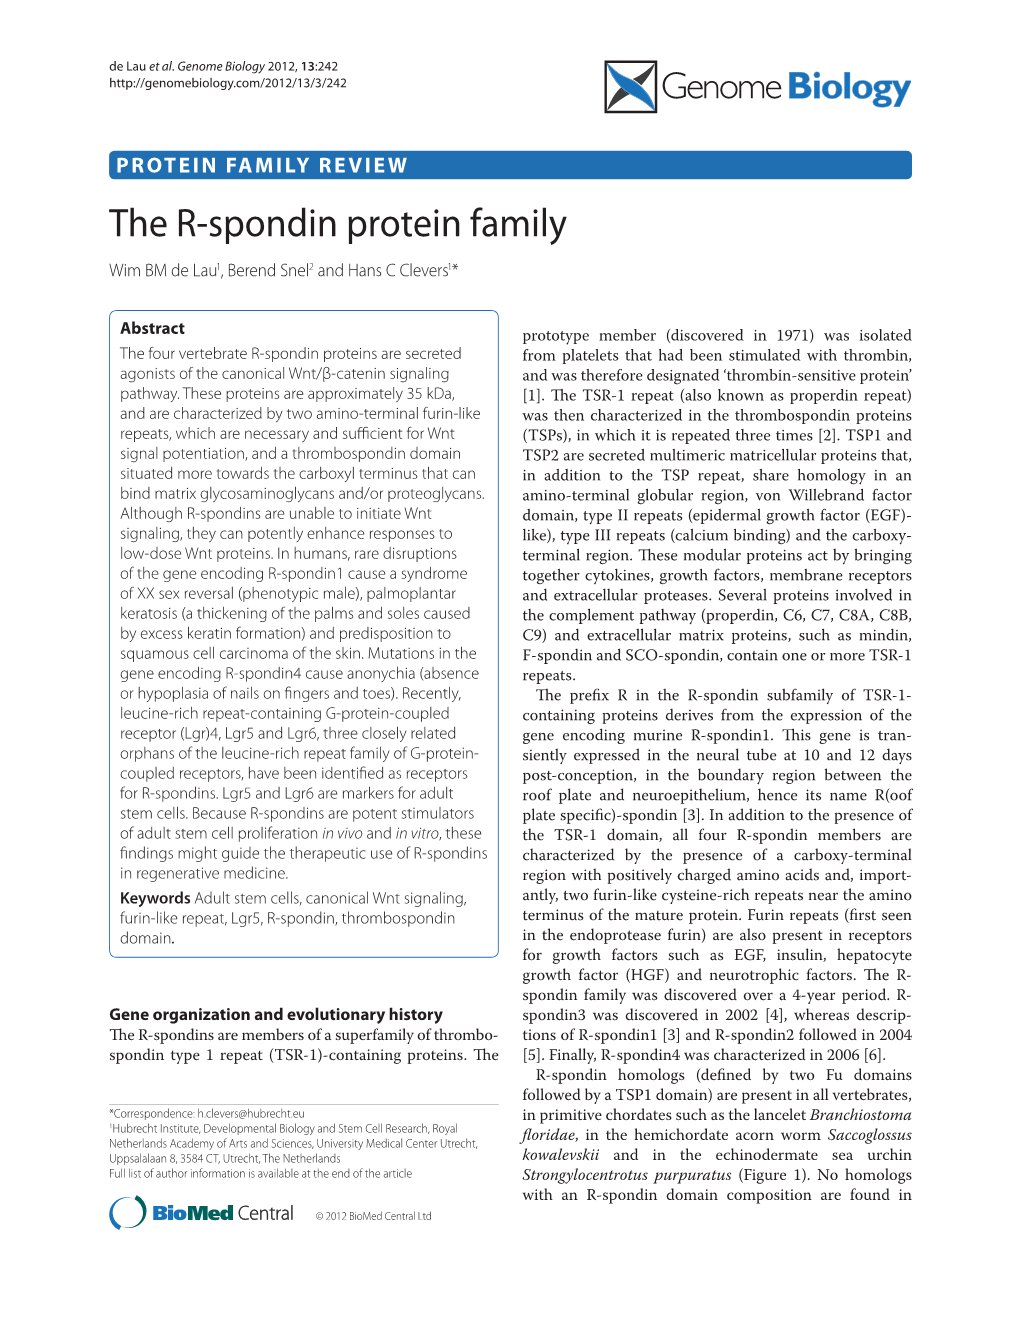 The R-Spondin Protein Family Wim BM De Lau1, Berend Snel2 and Hans C Clevers1*